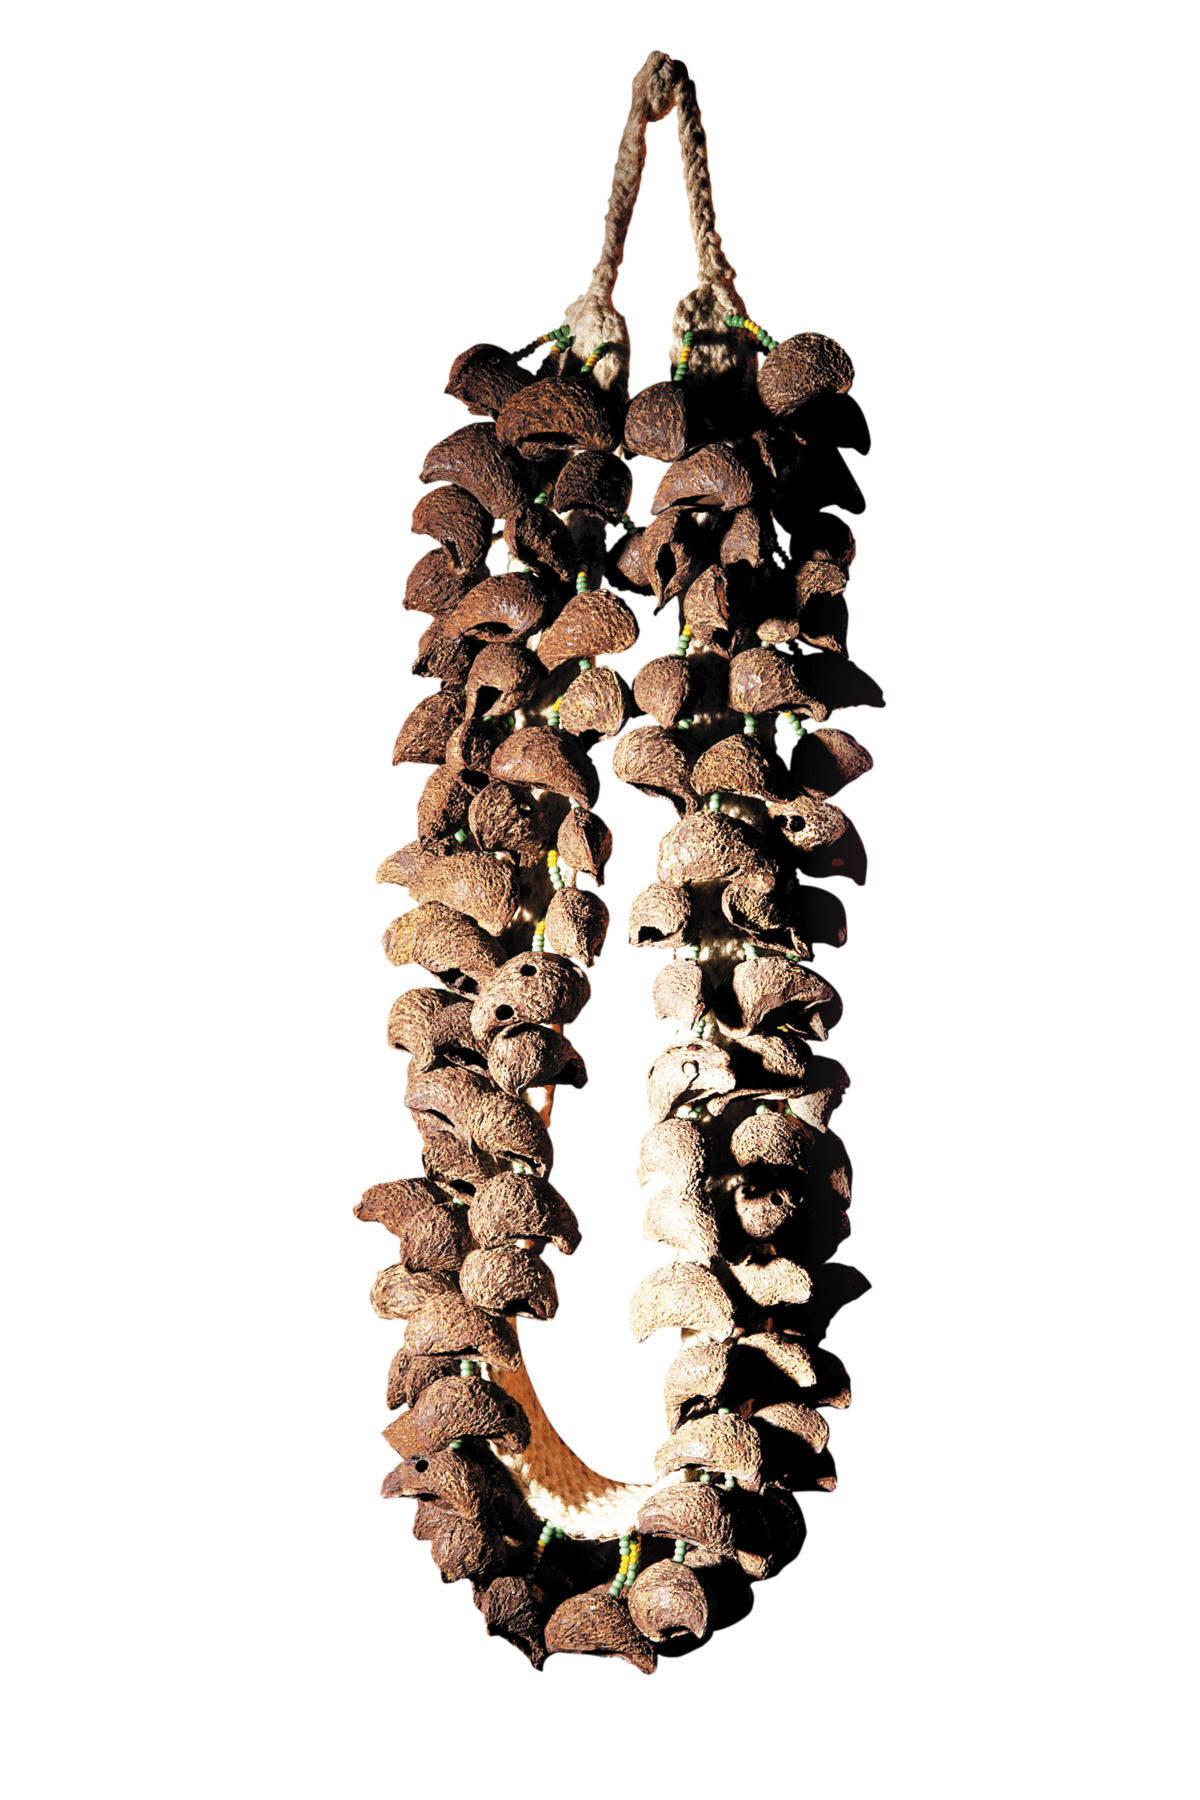 Fotografia. Chocalho de sementes amarradas a um cordão em forma de colar.